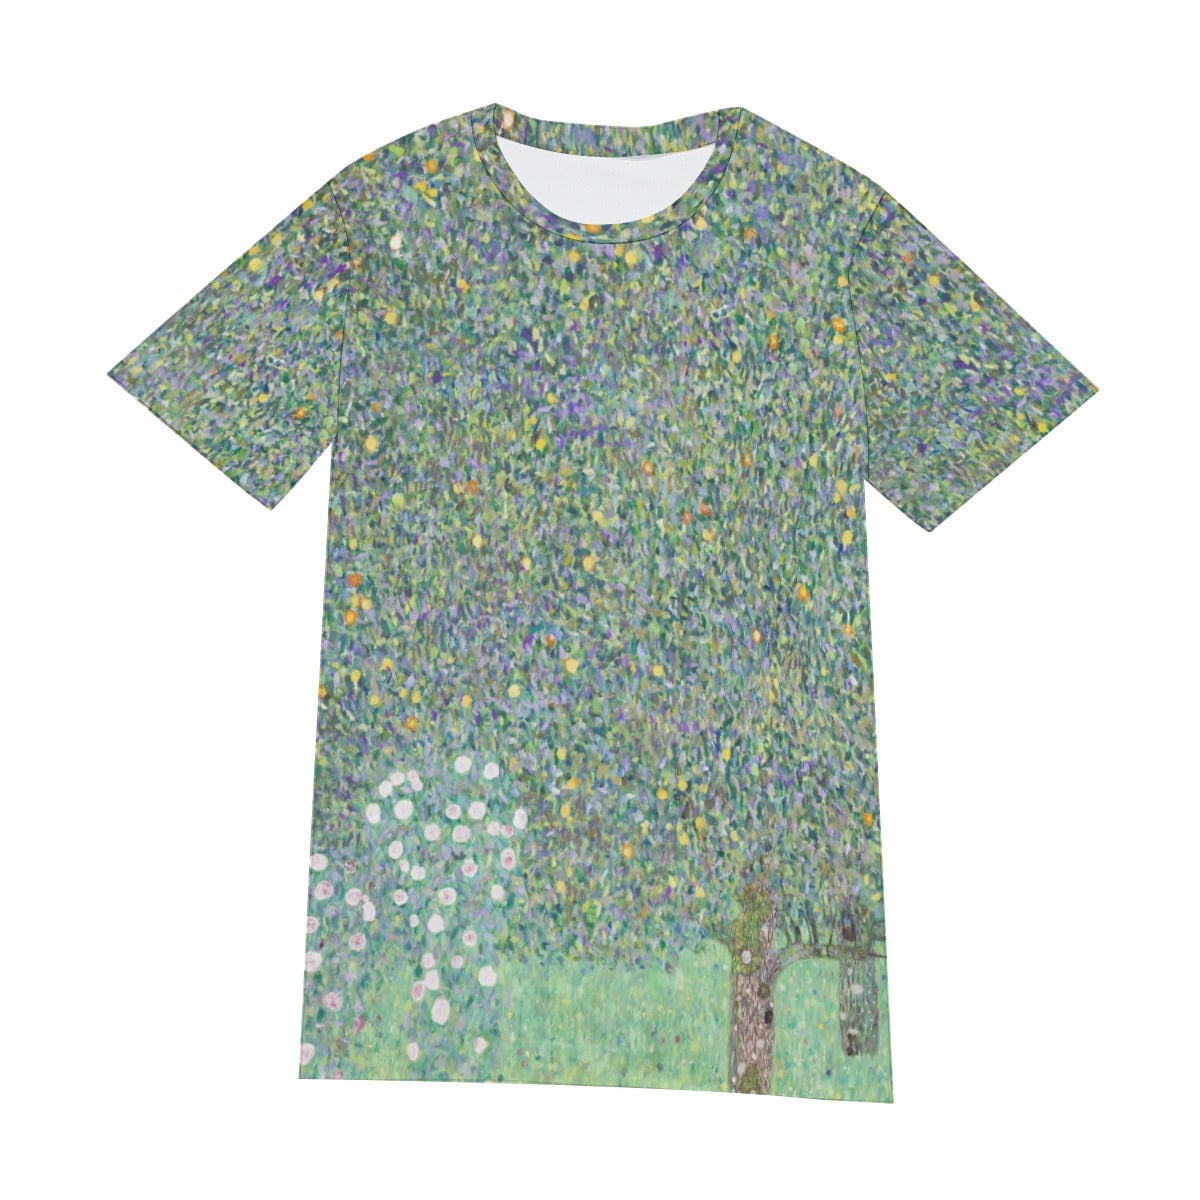 Gustav Klimt’s Rosebushes Under the Trees T-Shirt